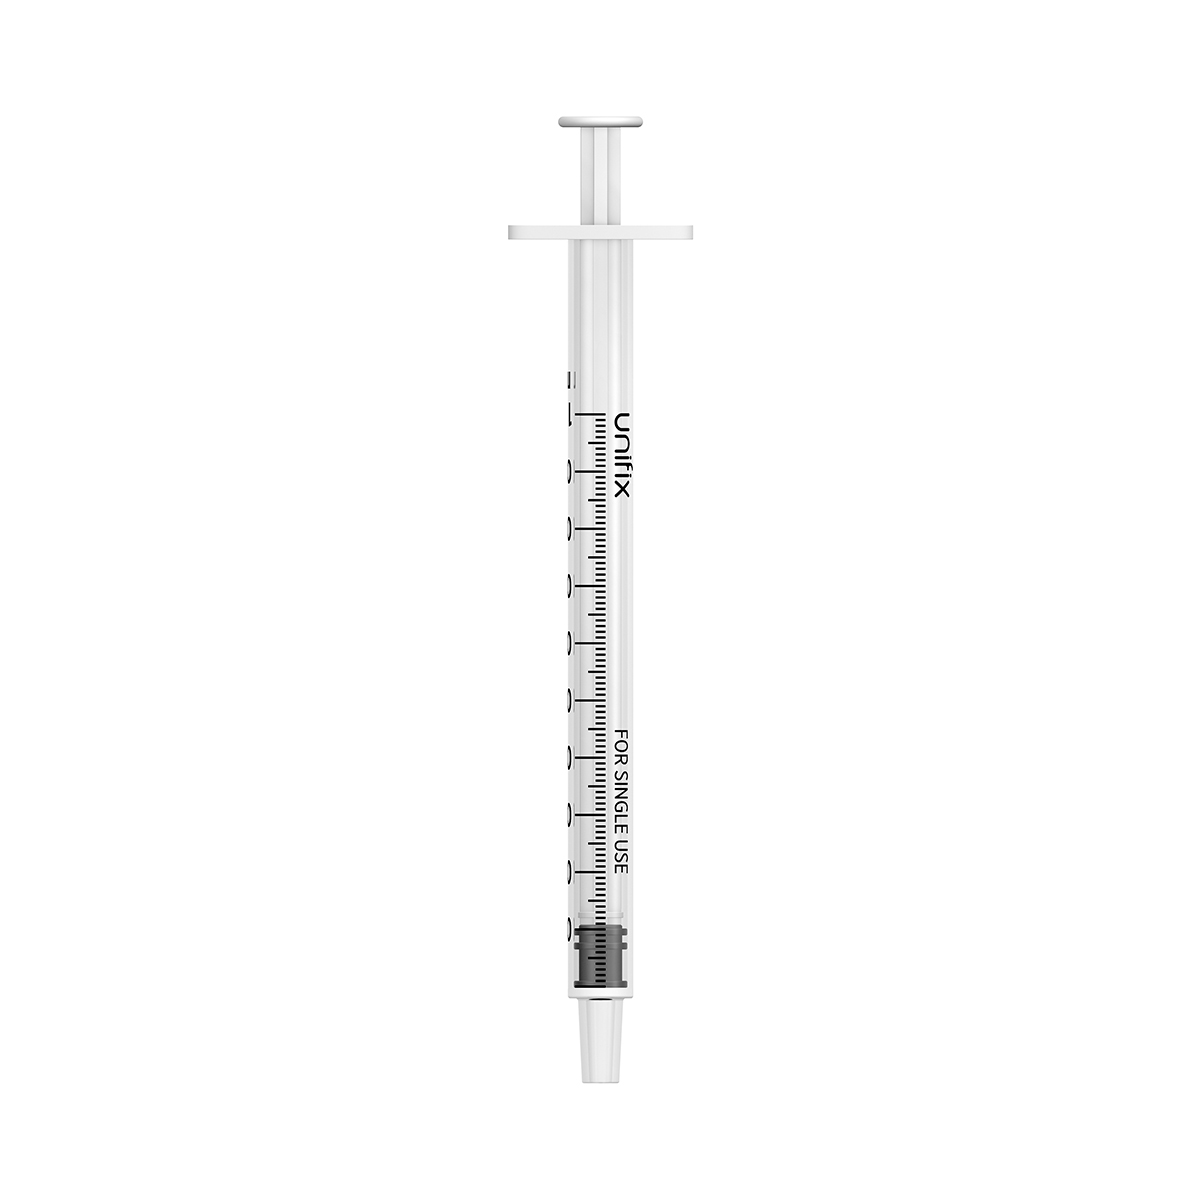 Unifix 1ml luer slip syringe